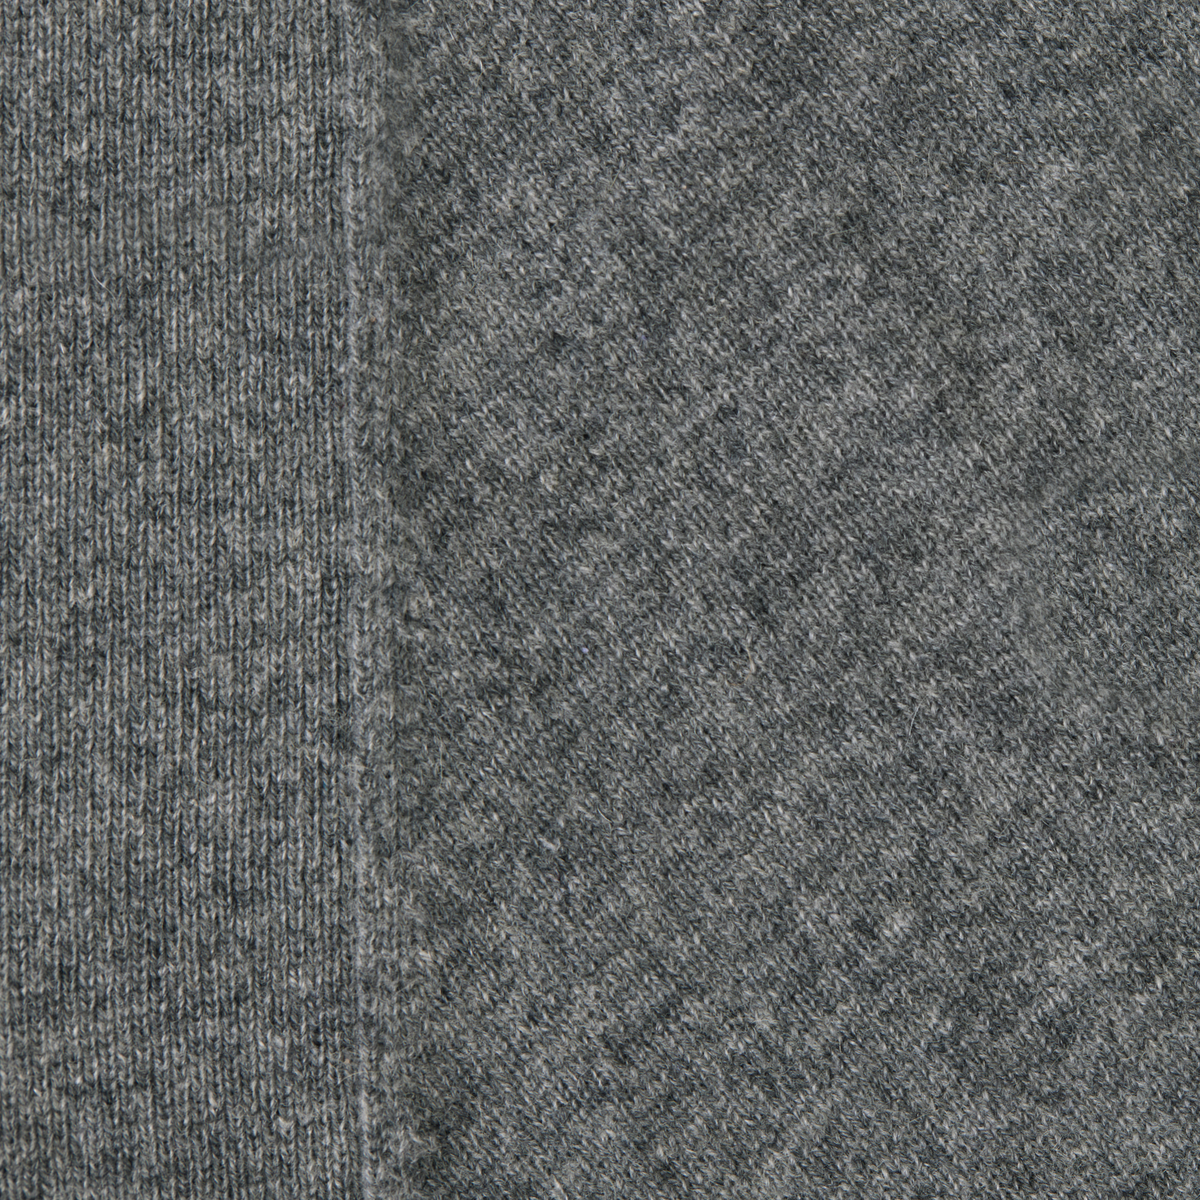 Fabric Closeup of Sferra Donna Cashmere Robe in Grey Color